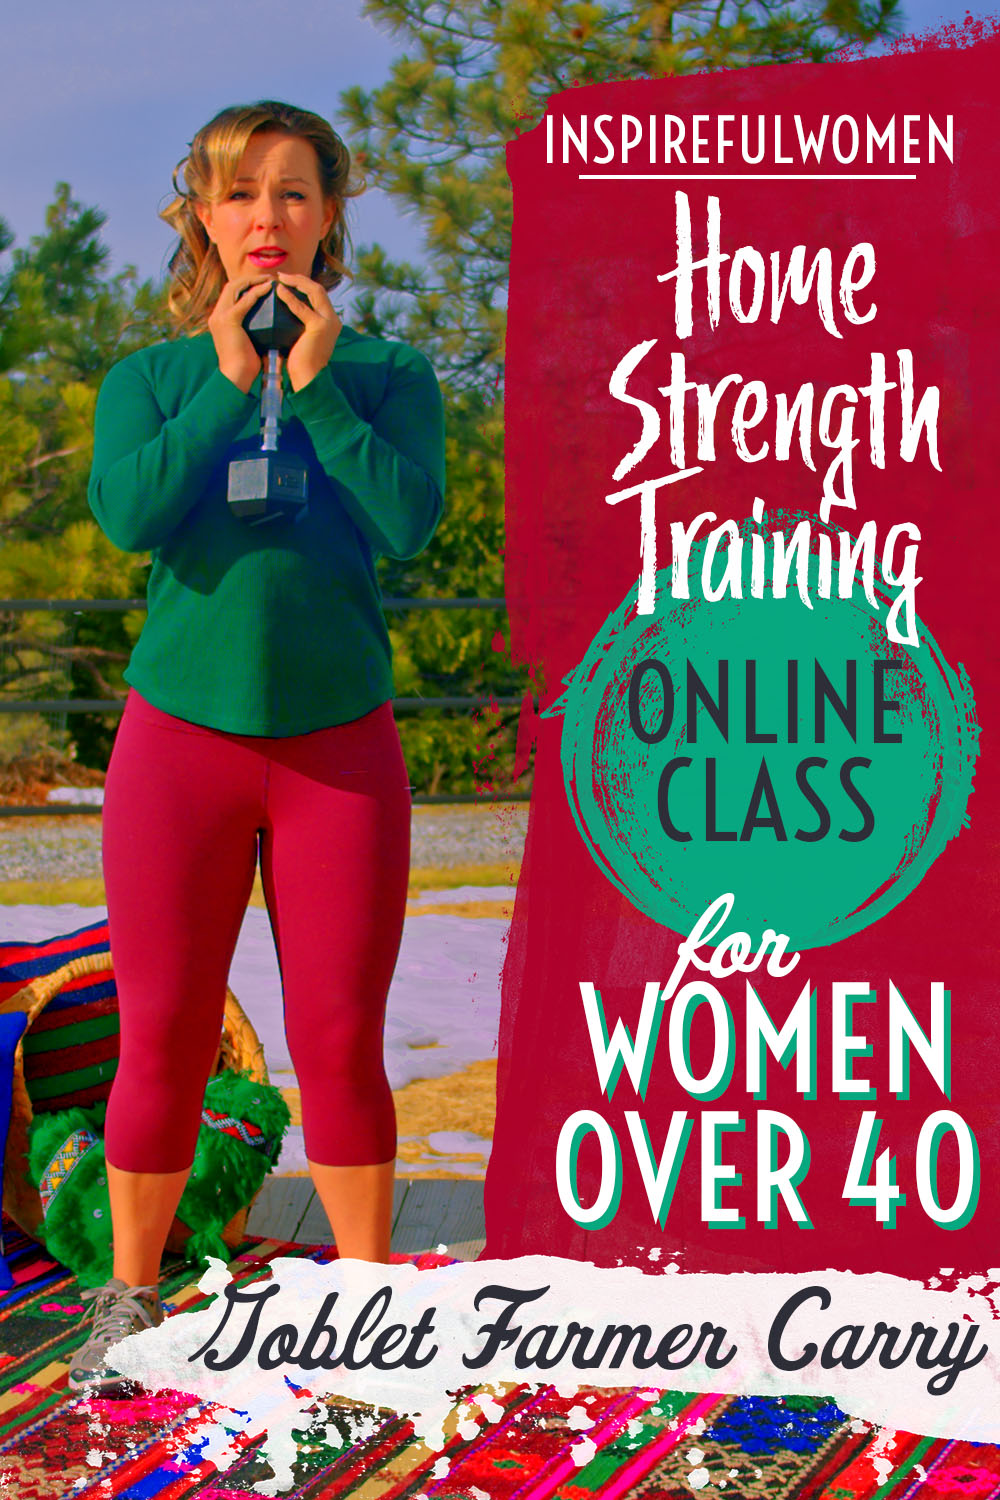 goblet-farmer-carry-dumbbell-total-body-core-exercise-home-resistance-training-women-40+